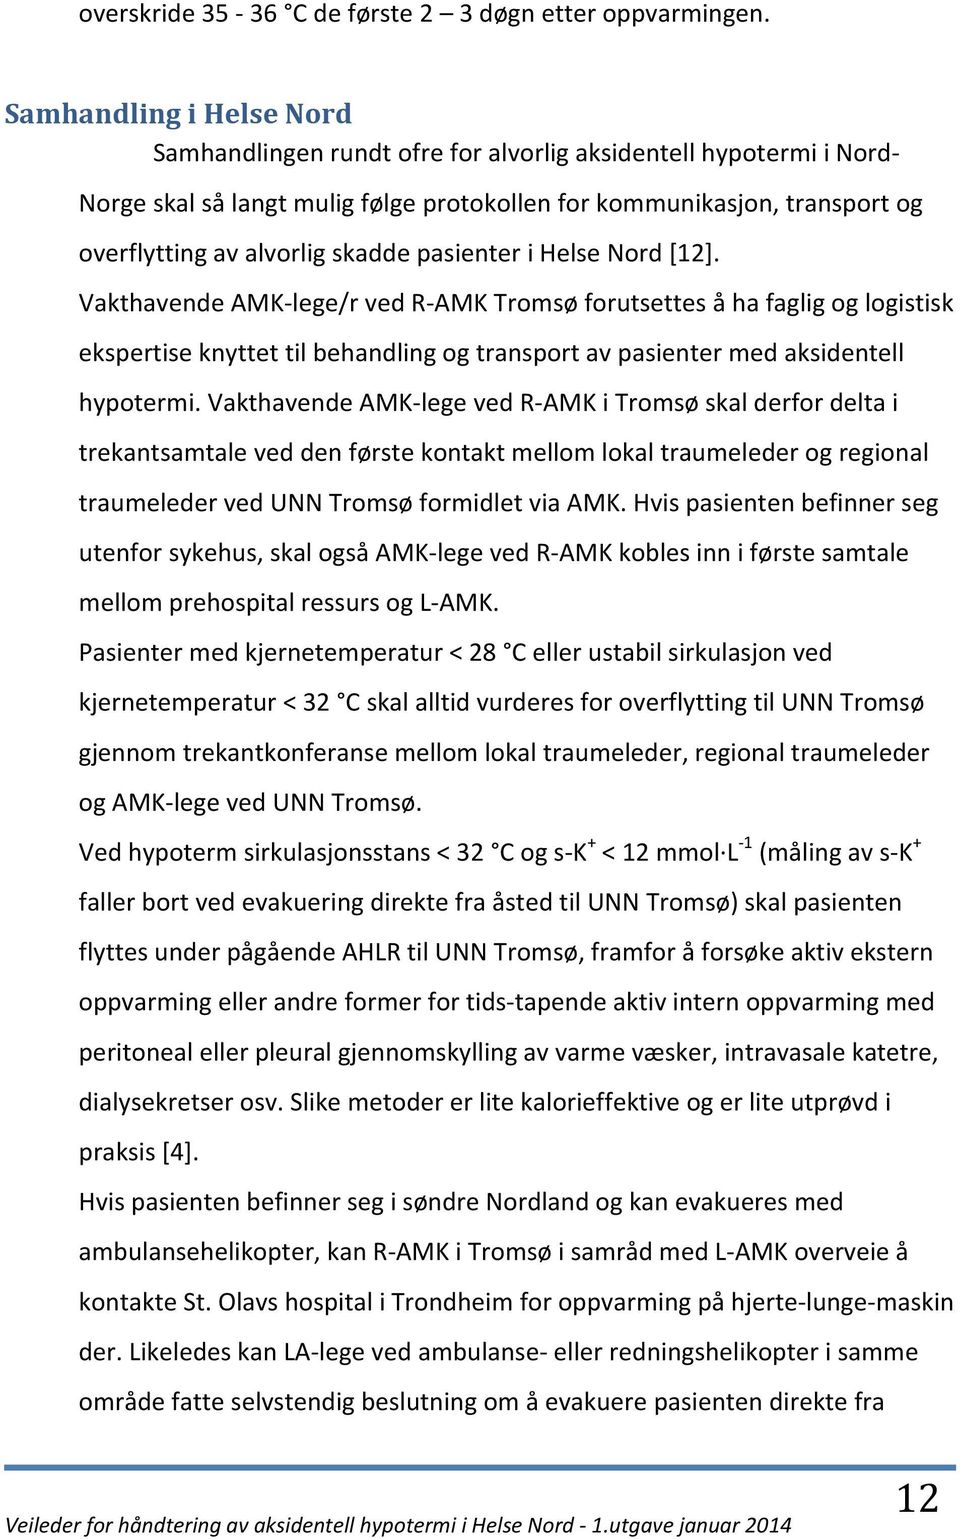 skadde pasienter i Helse Nord [12]. Vakthavende AMK-lege/r ved R-AMK Tromsø forutsettes å ha faglig og logistisk ekspertise knyttet til behandling og transport av pasienter med aksidentell hypotermi.